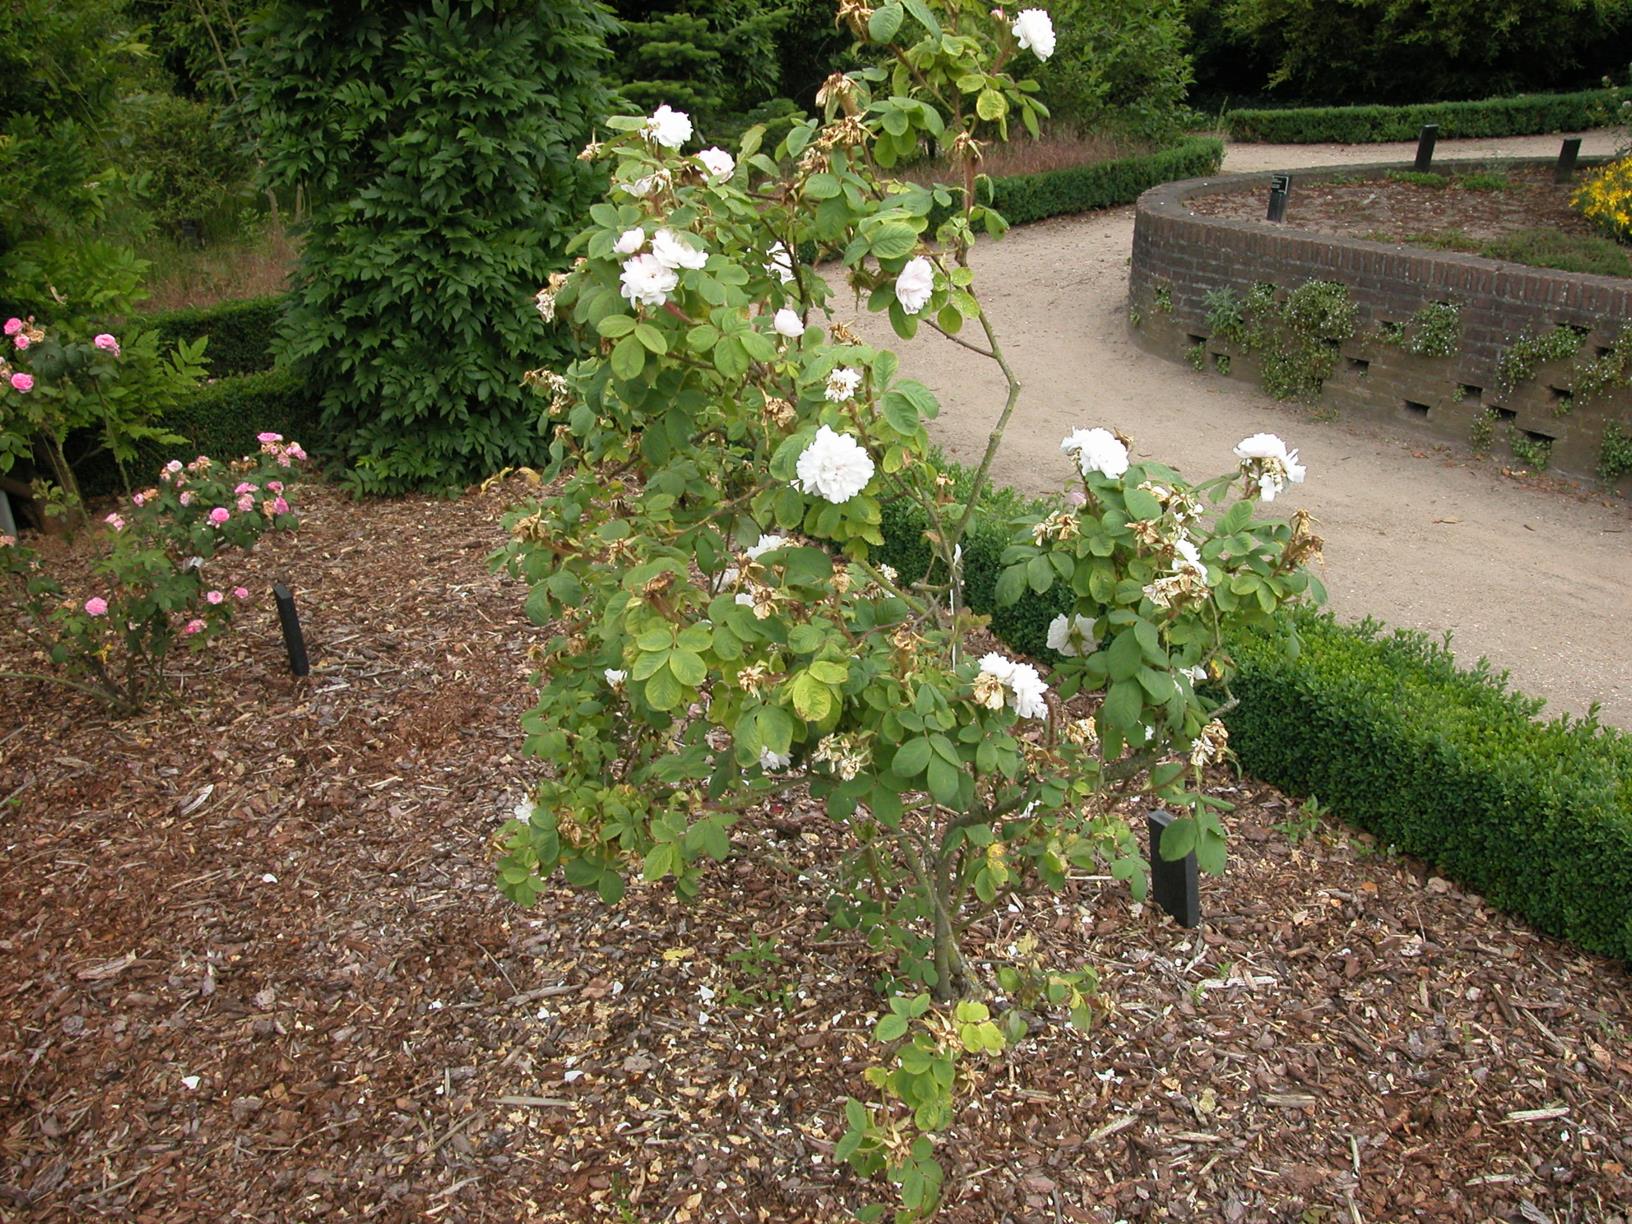 Rosa (Damascena Group) 'Quatre Saisons Blanc Mousseux' - Damascener roos, Perpetual White Moss